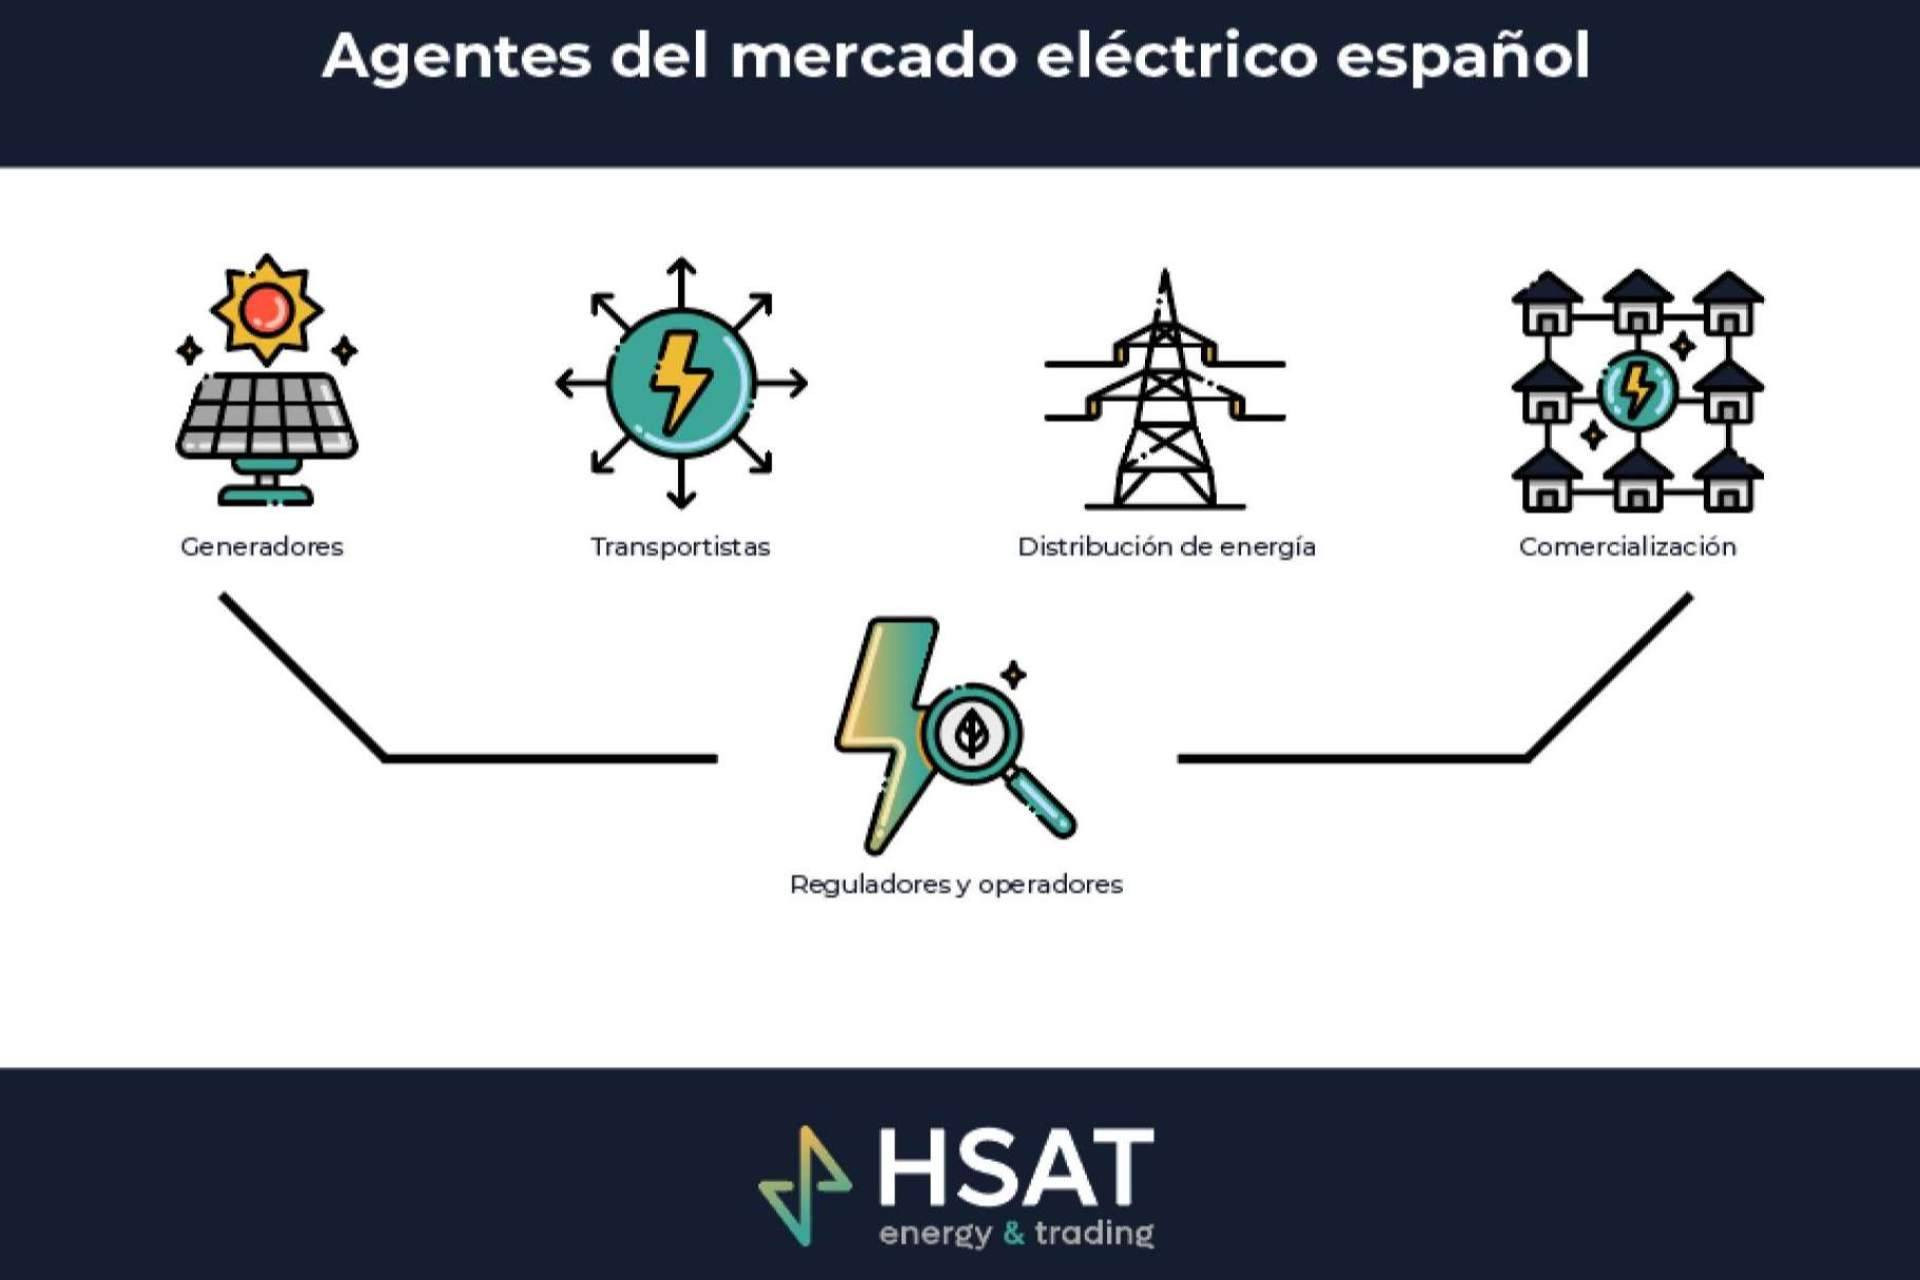  HSAT Energía, expertos en la optimización de los activos energéticos 